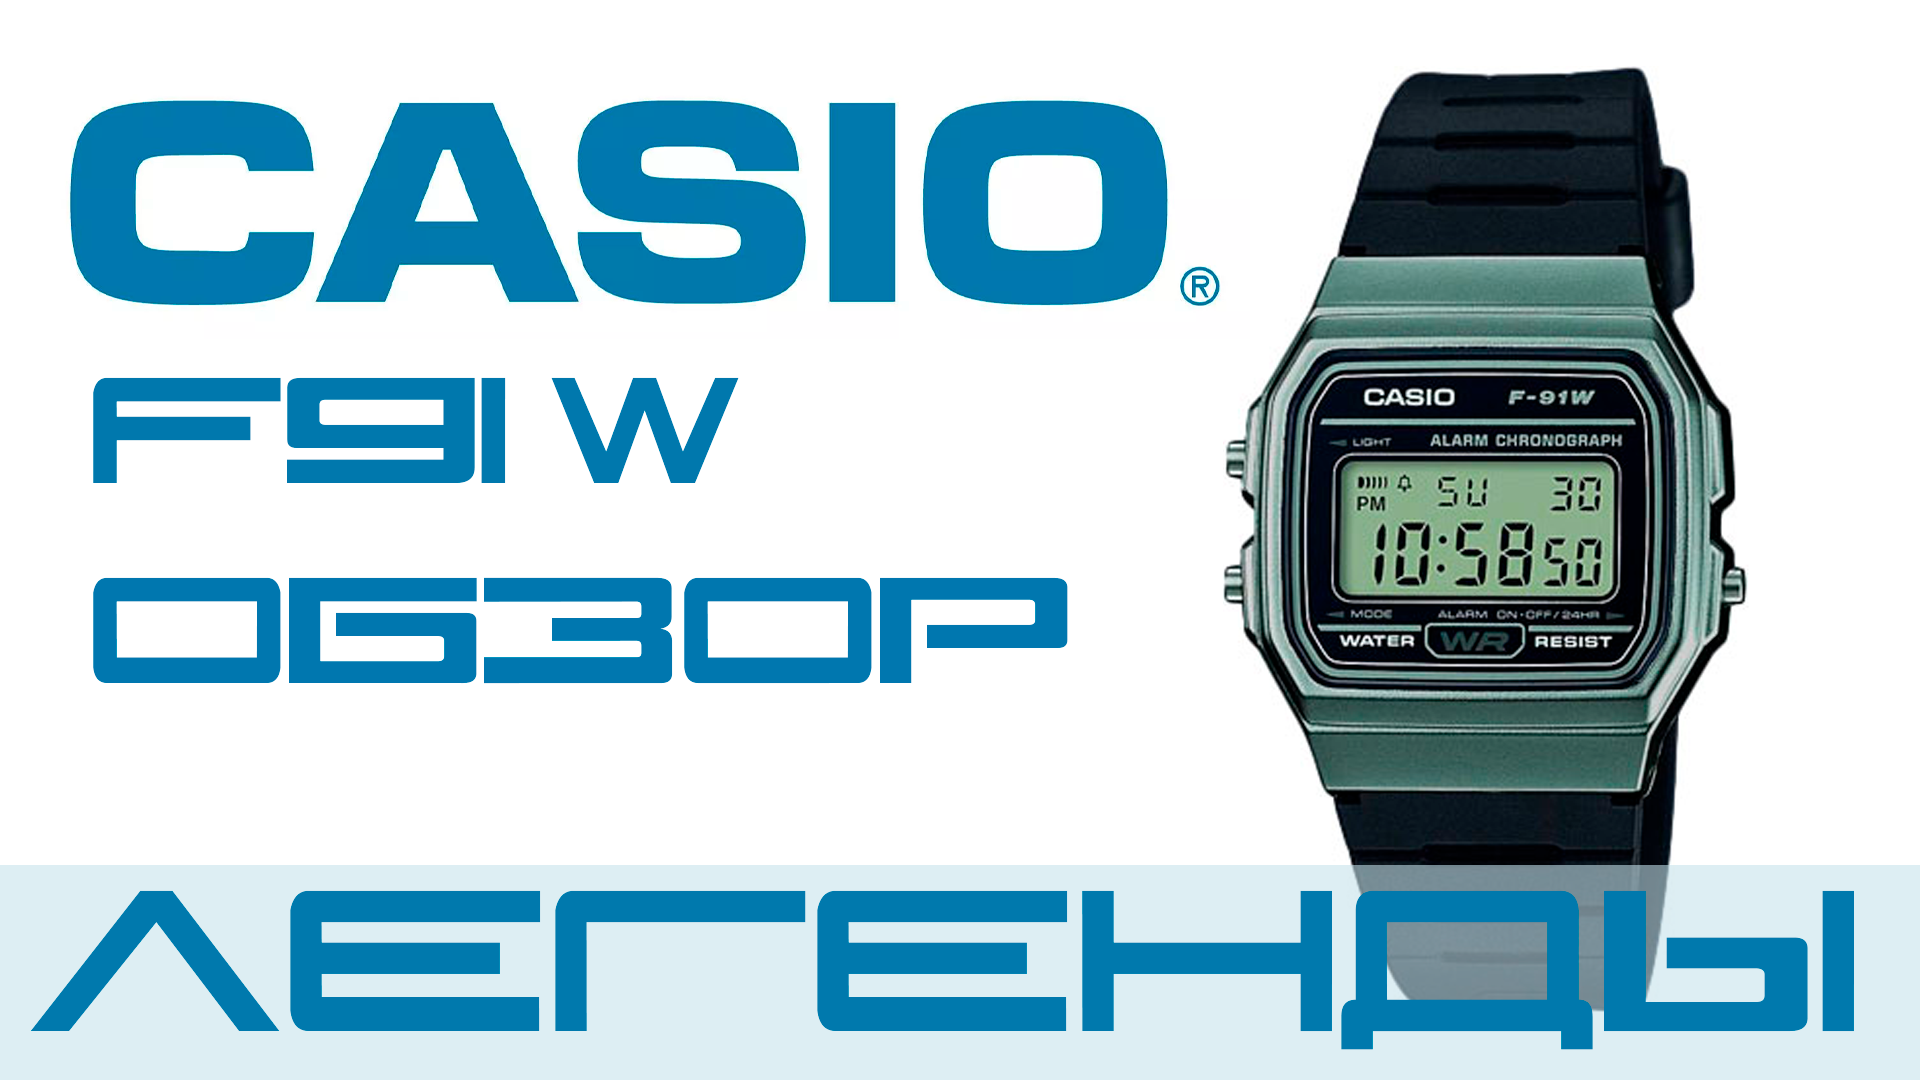 Casio F91 W. Часы легенда, которые должны быть в любом часовом сэте